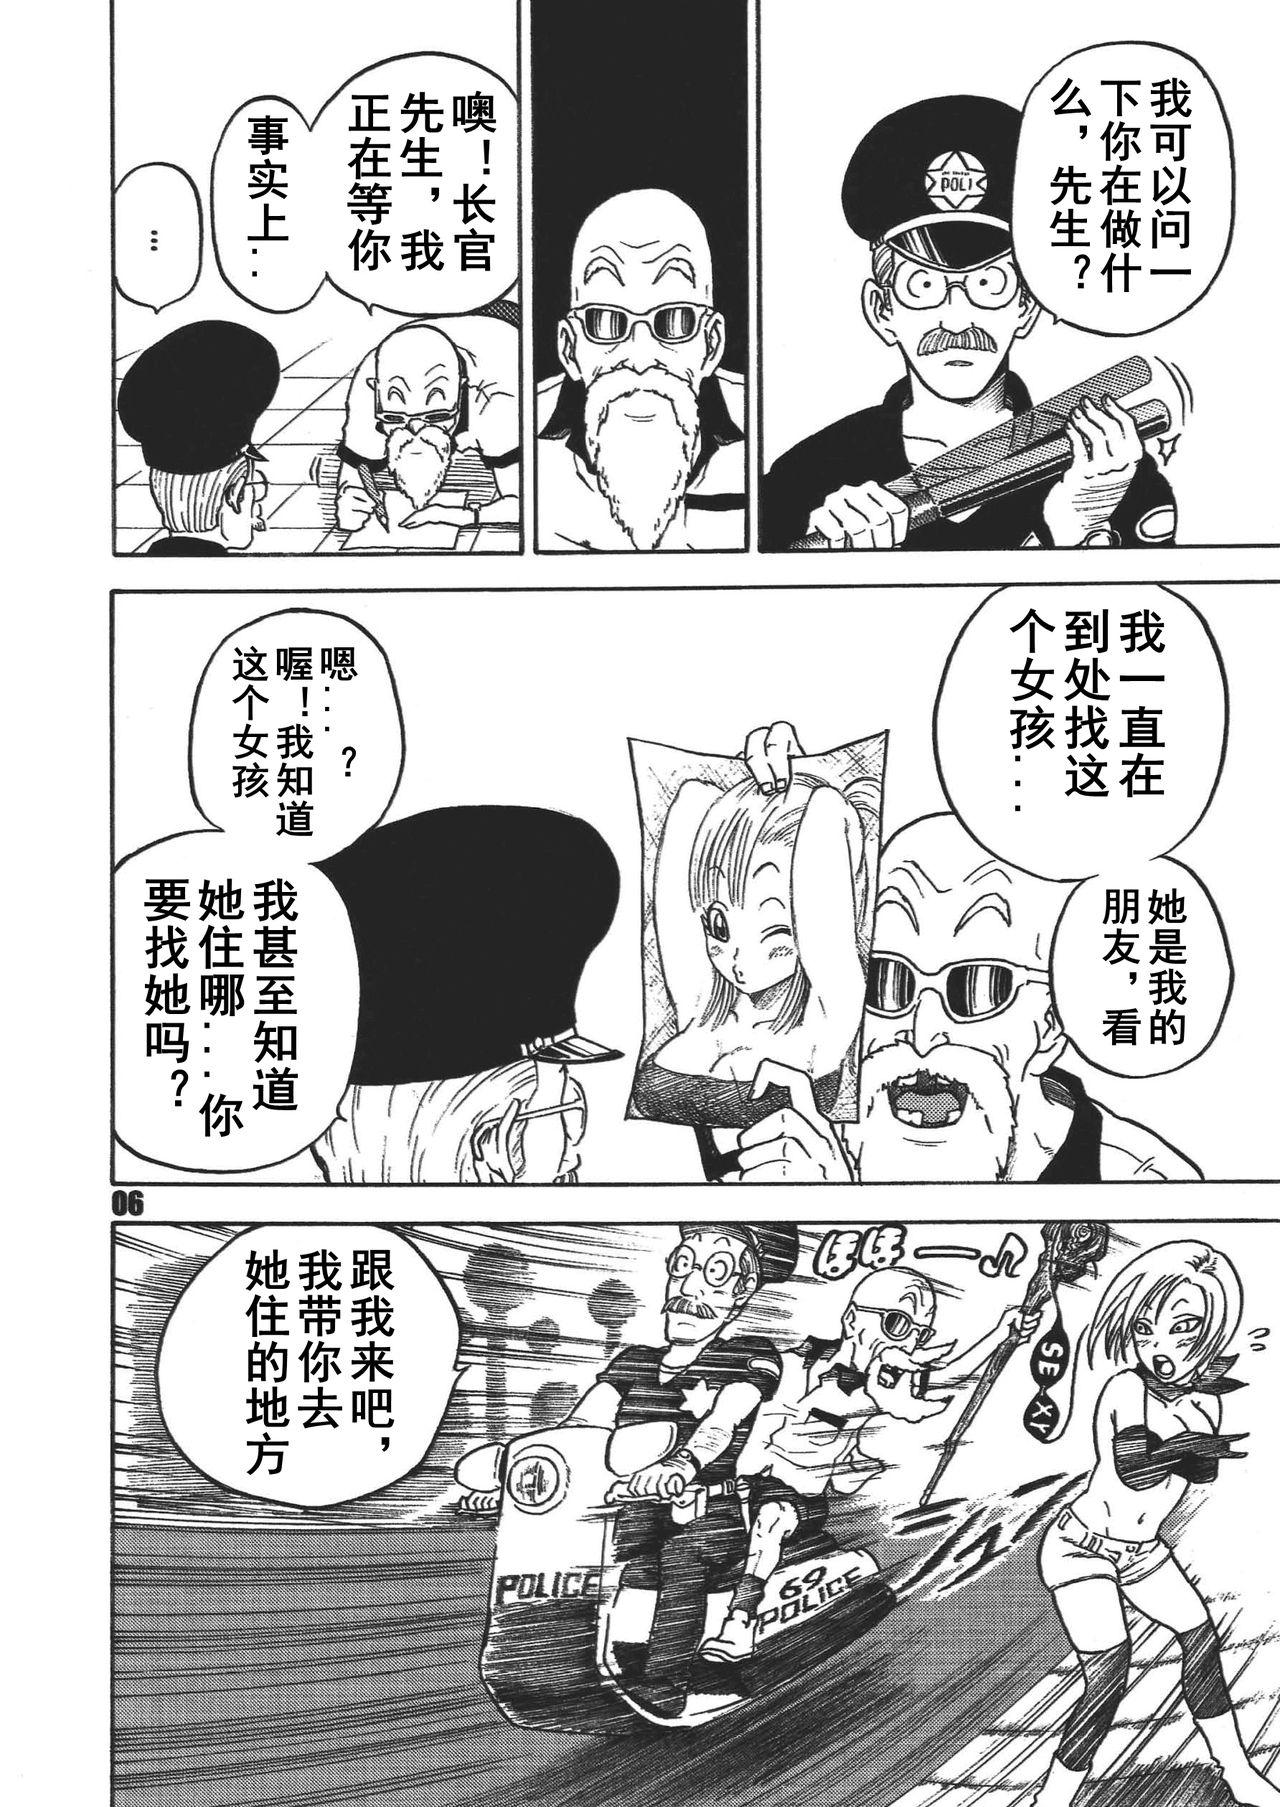 Masterbate Dangan Ball Maki no Ichi - Nishi no Miyako no Harenchi Jiken - Dragon ball Flaquita - Page 5